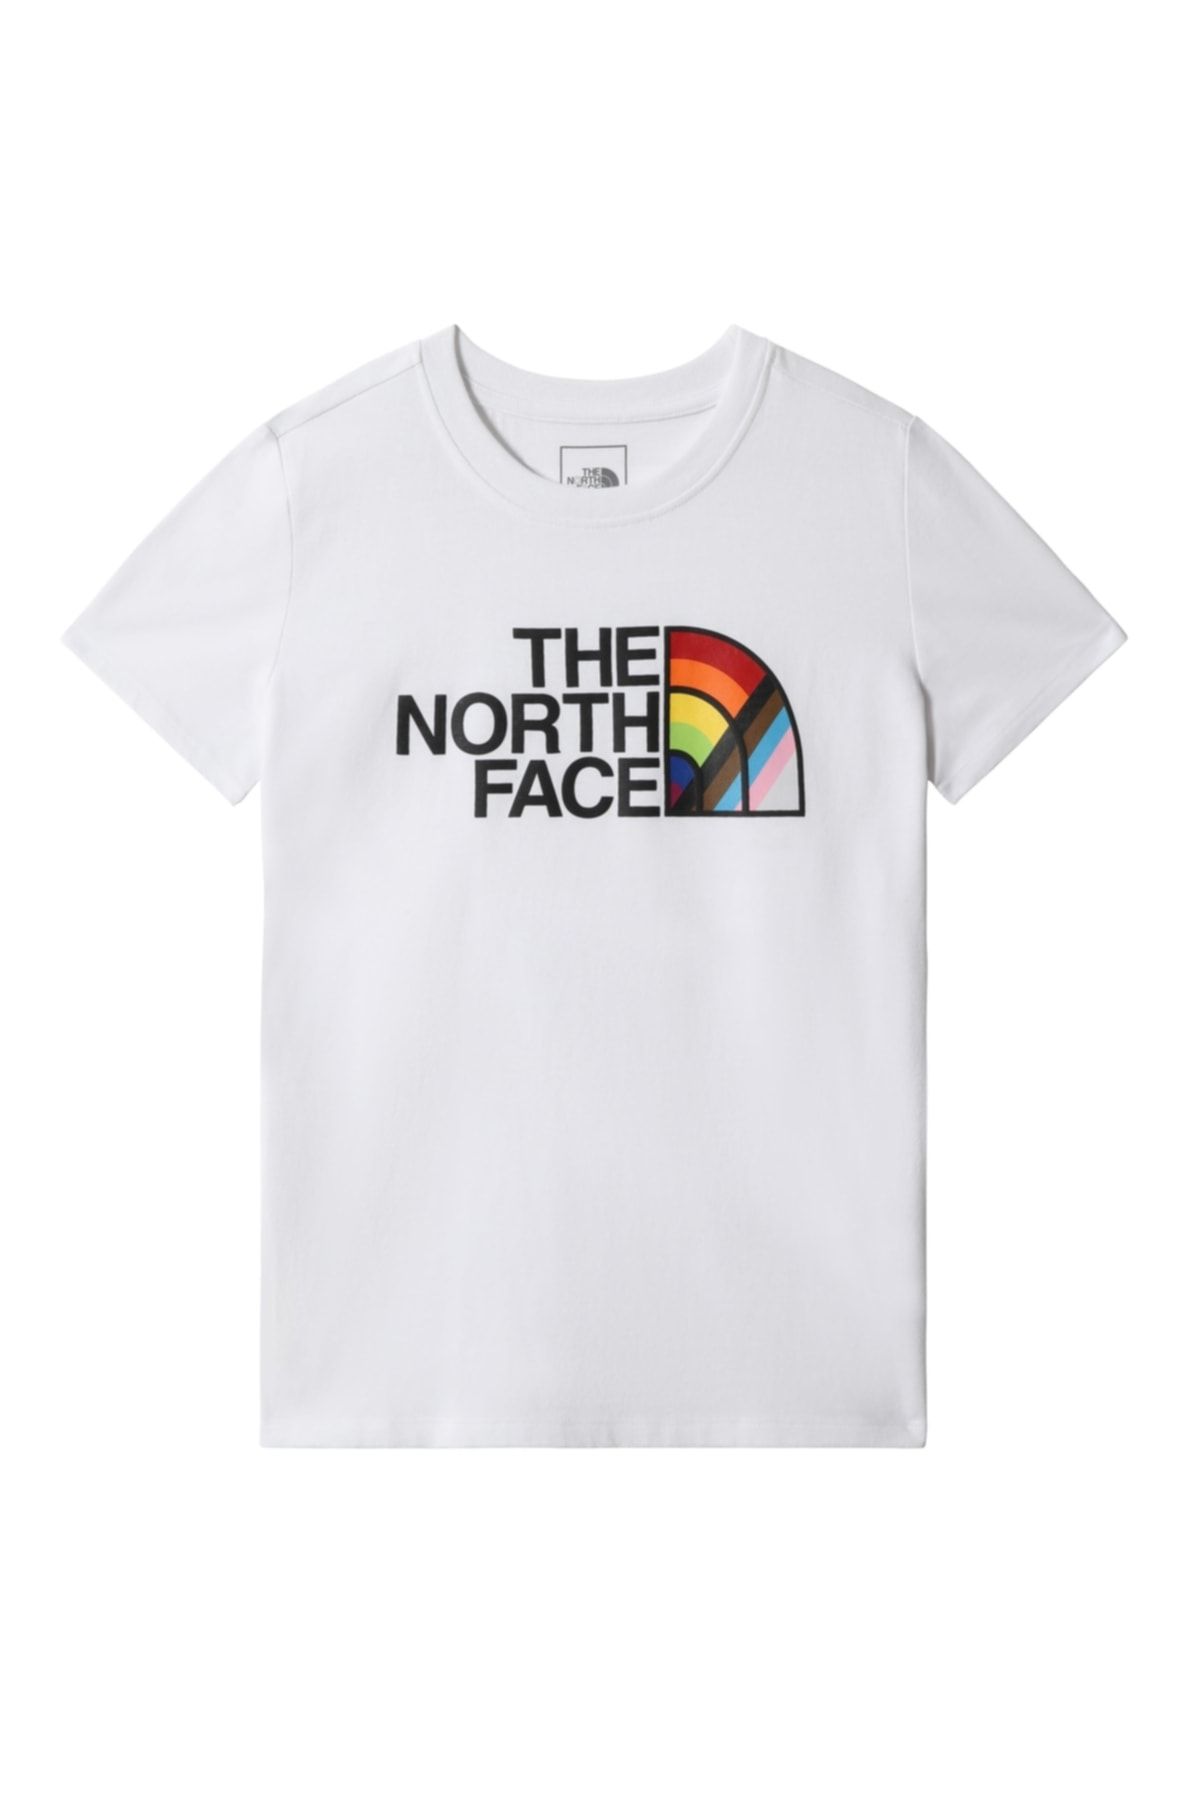 The North Face W S/s Prıde Tee- Nf0a7qcmfn41- T-Shirt